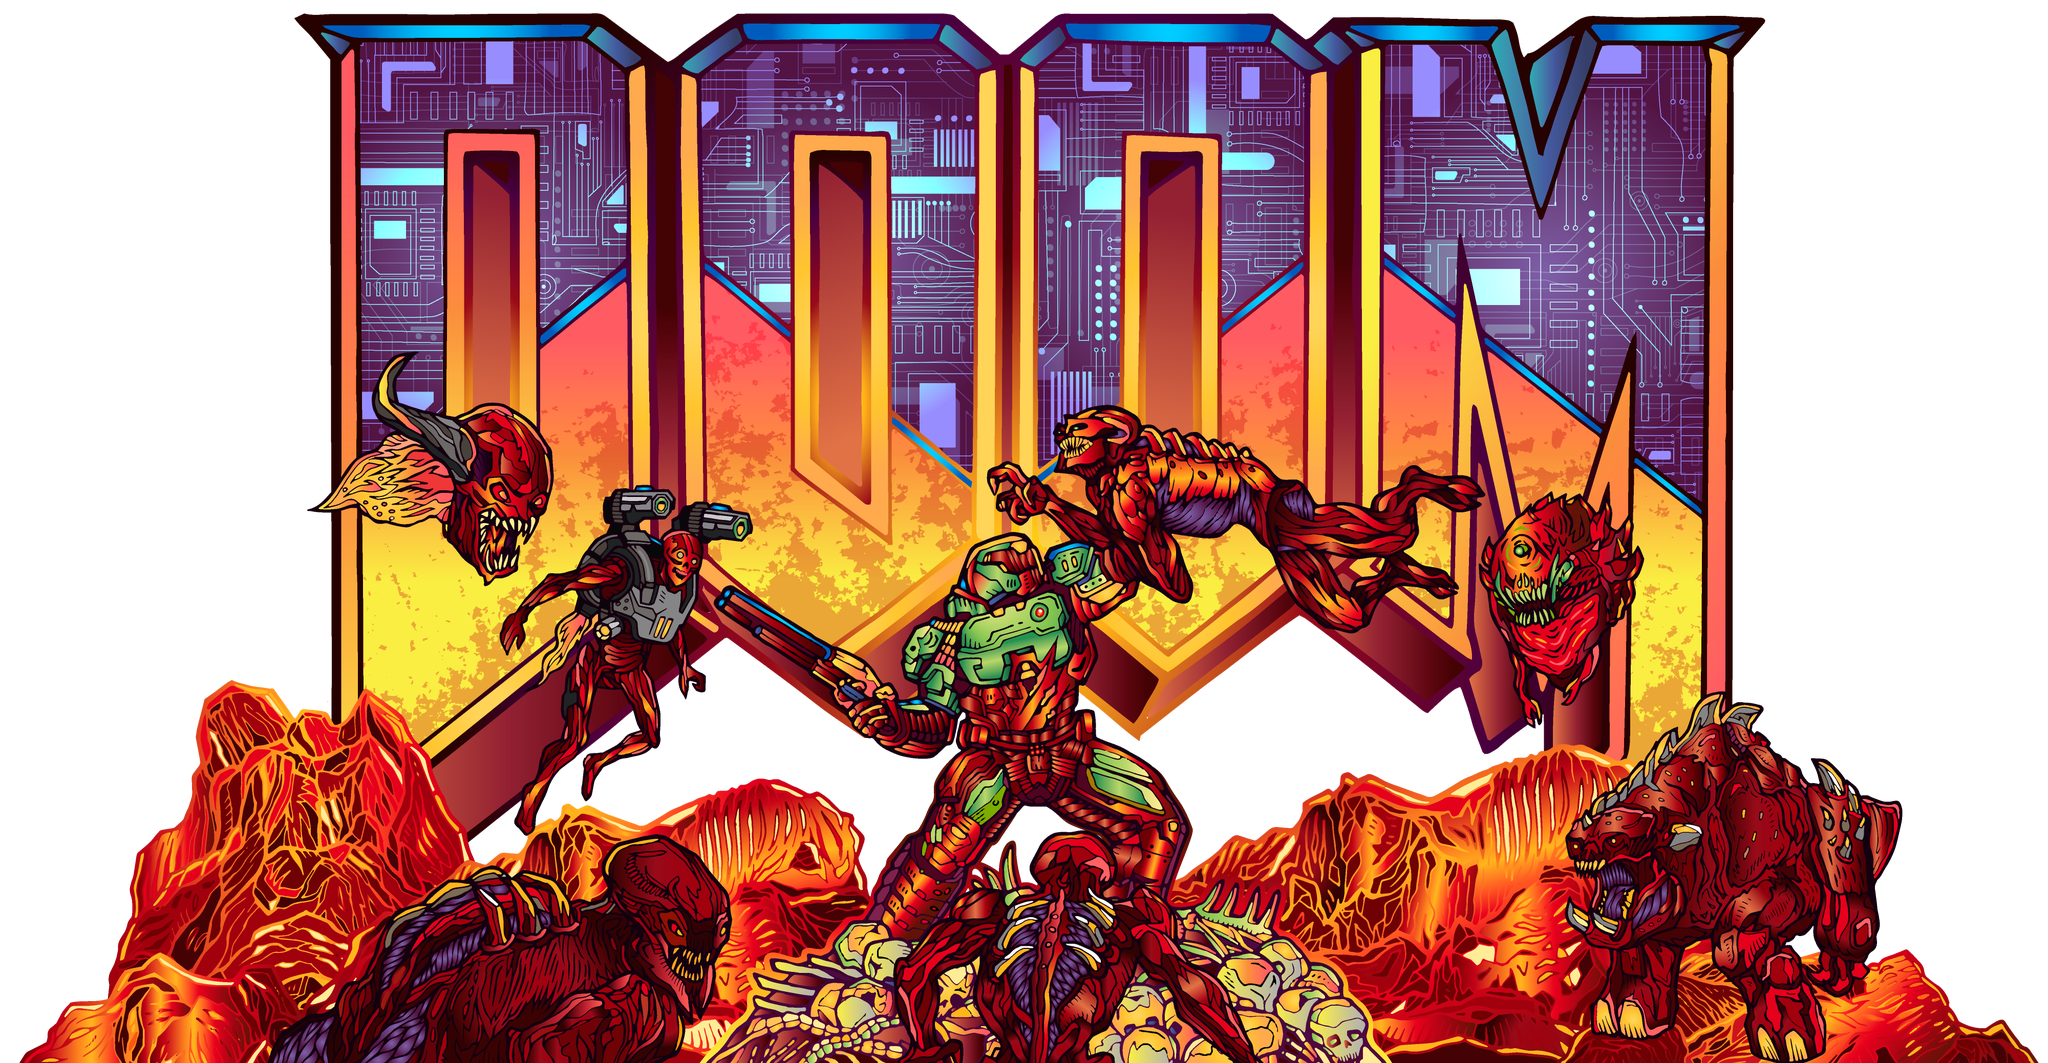 Doom rushaz. Дум1. Doom 1993 Постер. Doom игра 1993 обложка.